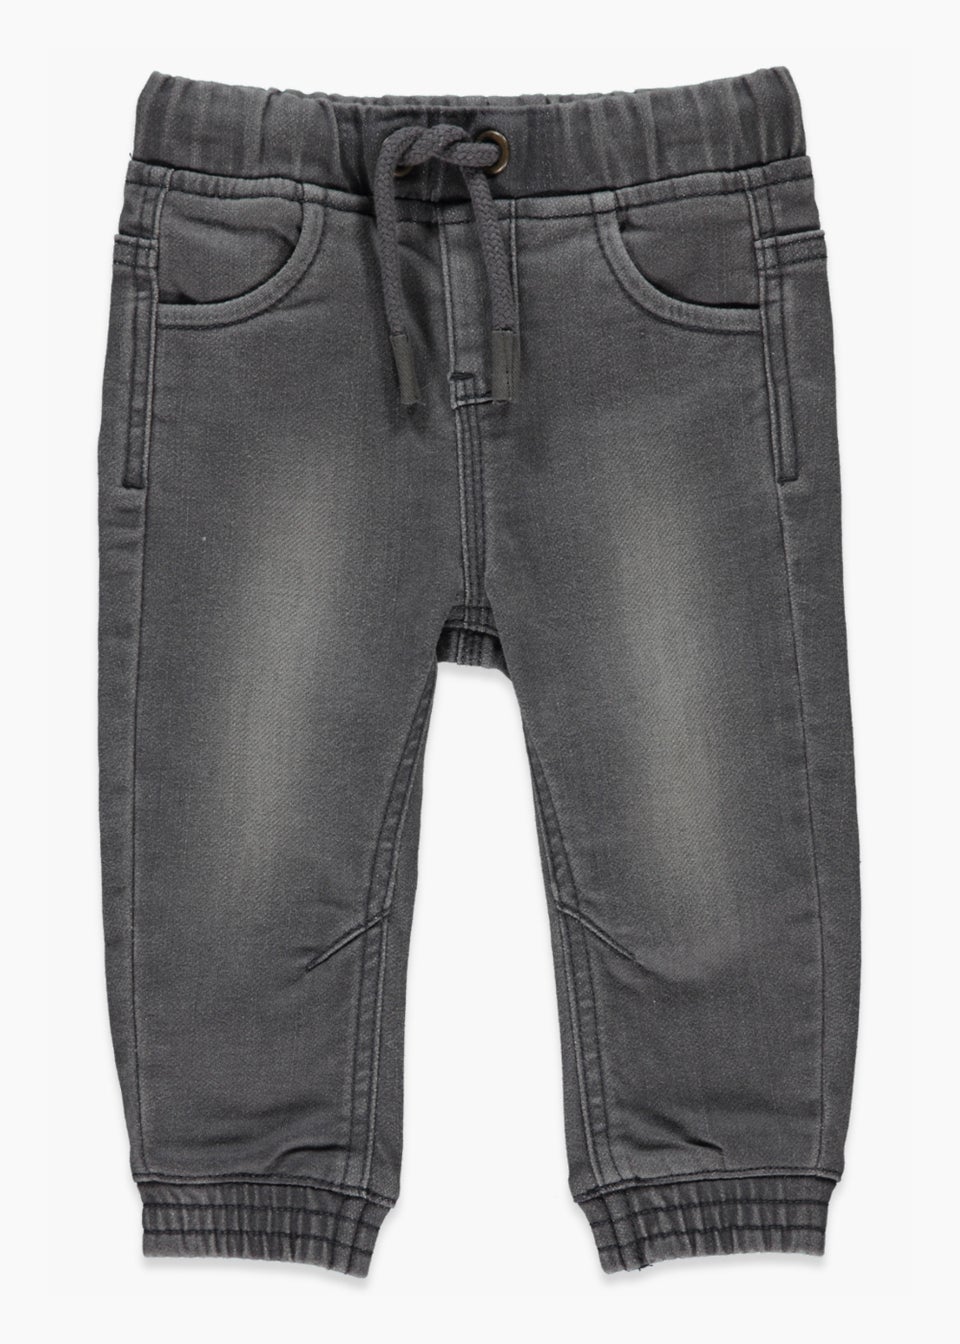 Boys Grey Cuffed Stretch Jeans (9mths-6yrs)